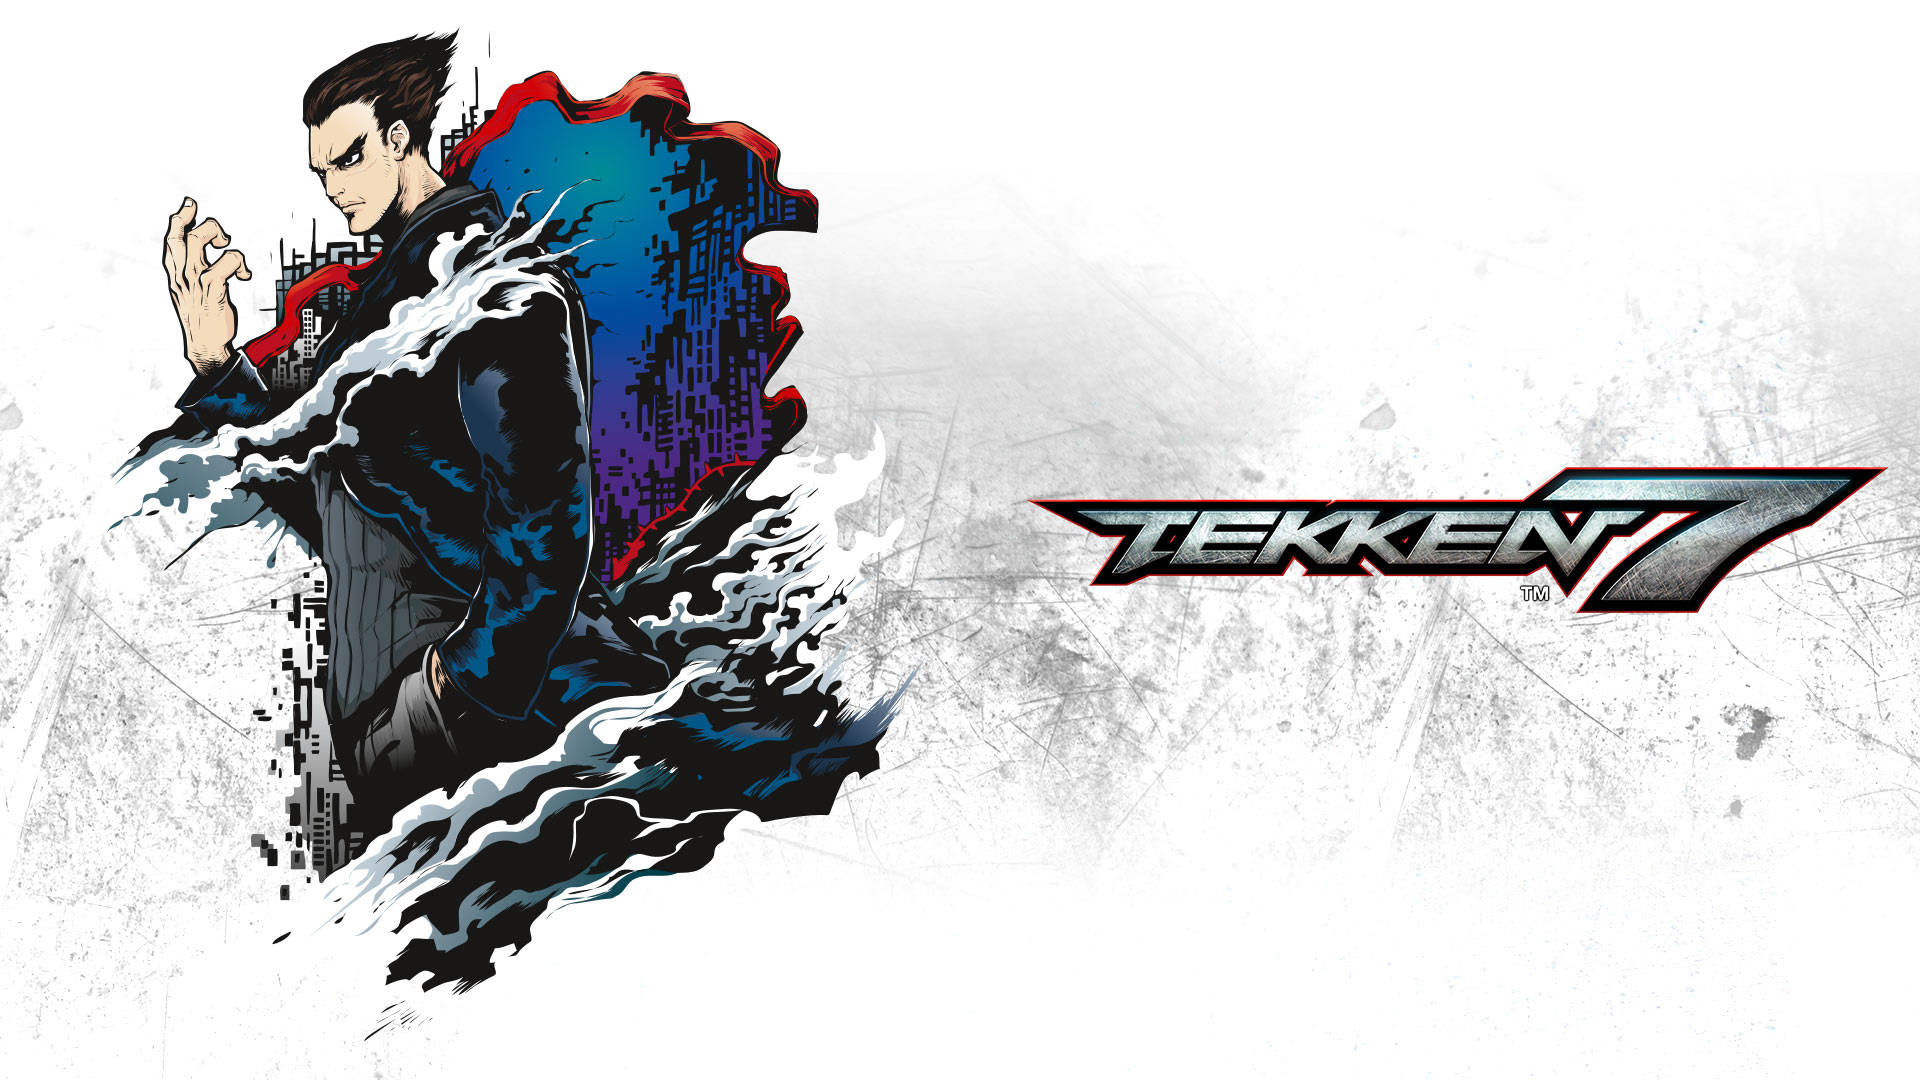 Kazuya Mishima Tekken 7 Comic Cover Wallpaper